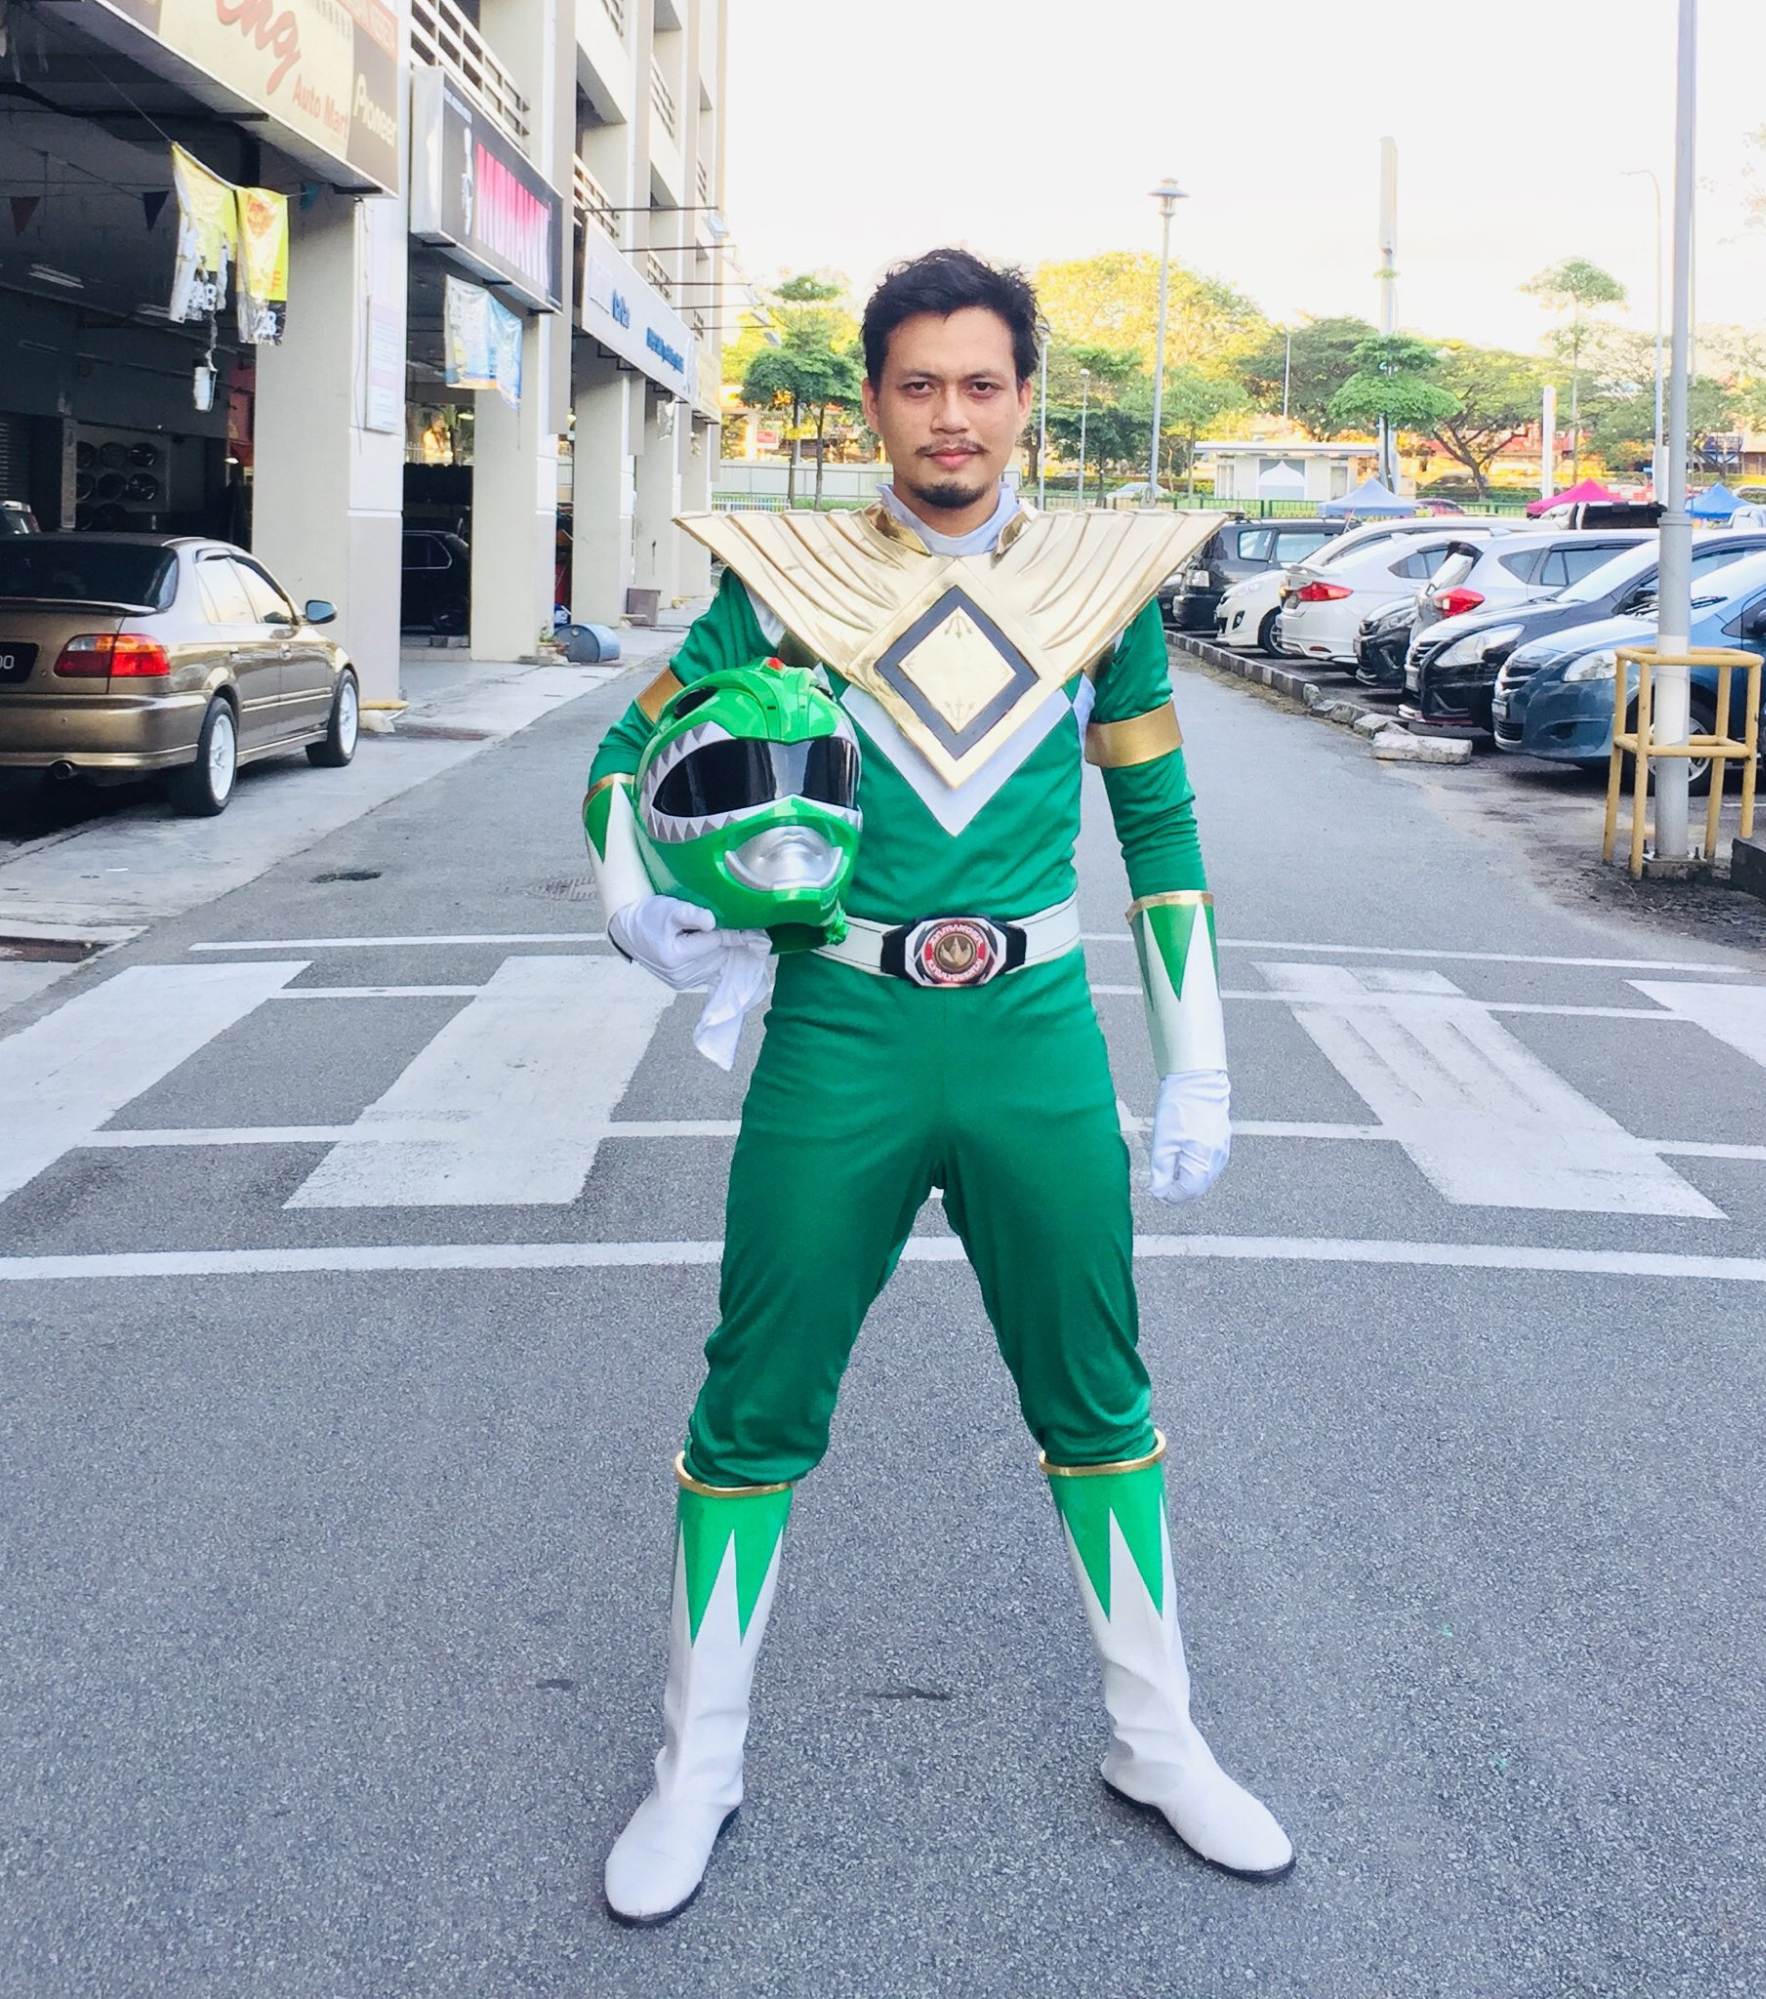 Malaysian man Power Ranger cosplay - DIY suit